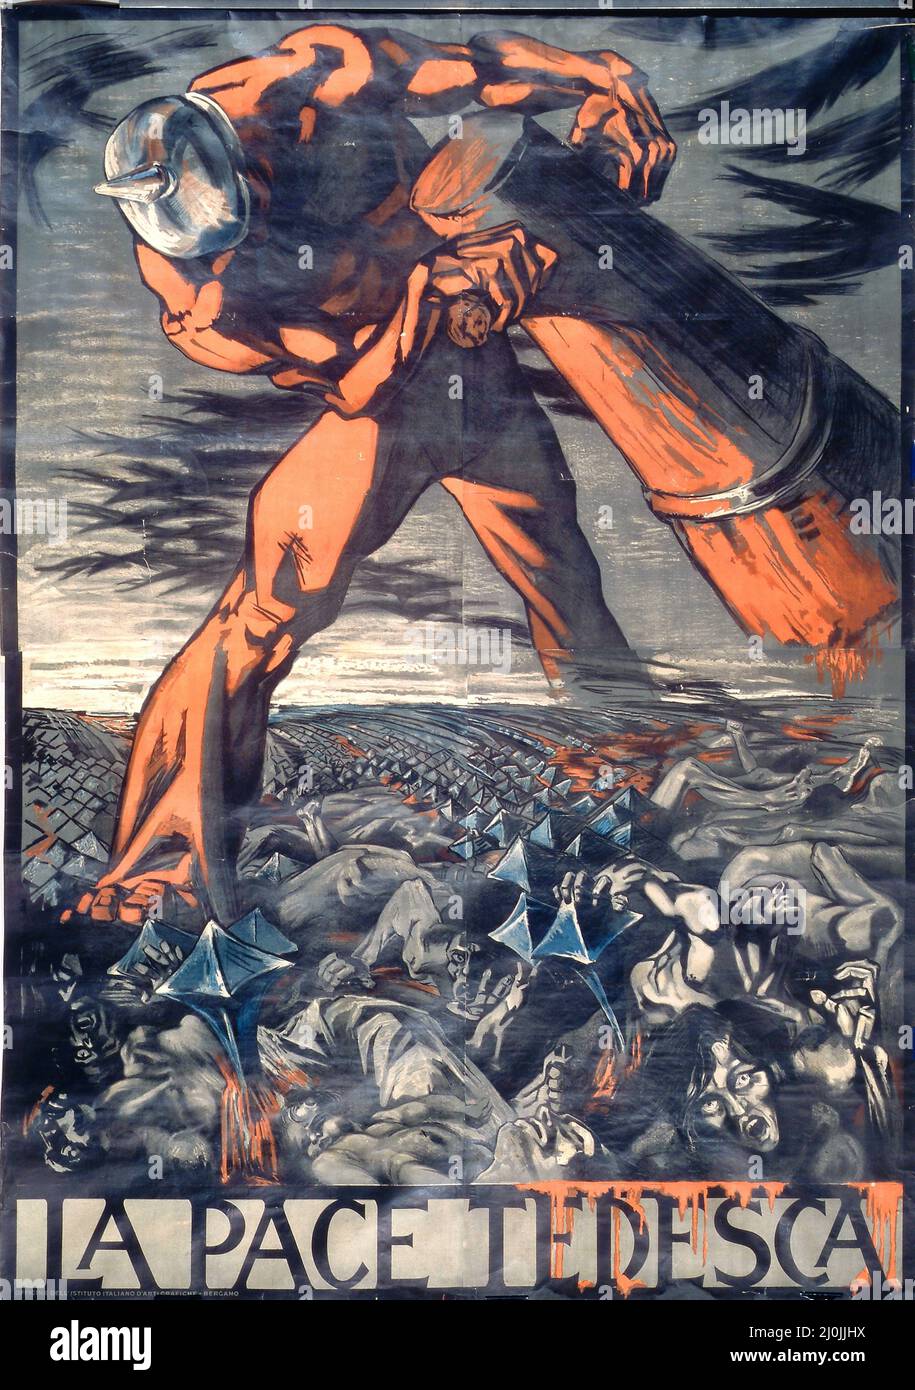 La Pace tedesca - der deutsche Frieden. Canevari, Silvio, 1893-1931 Künstler. Bergamo, Italien : Italienisches Institut für Grafik, 1918. Stockfoto